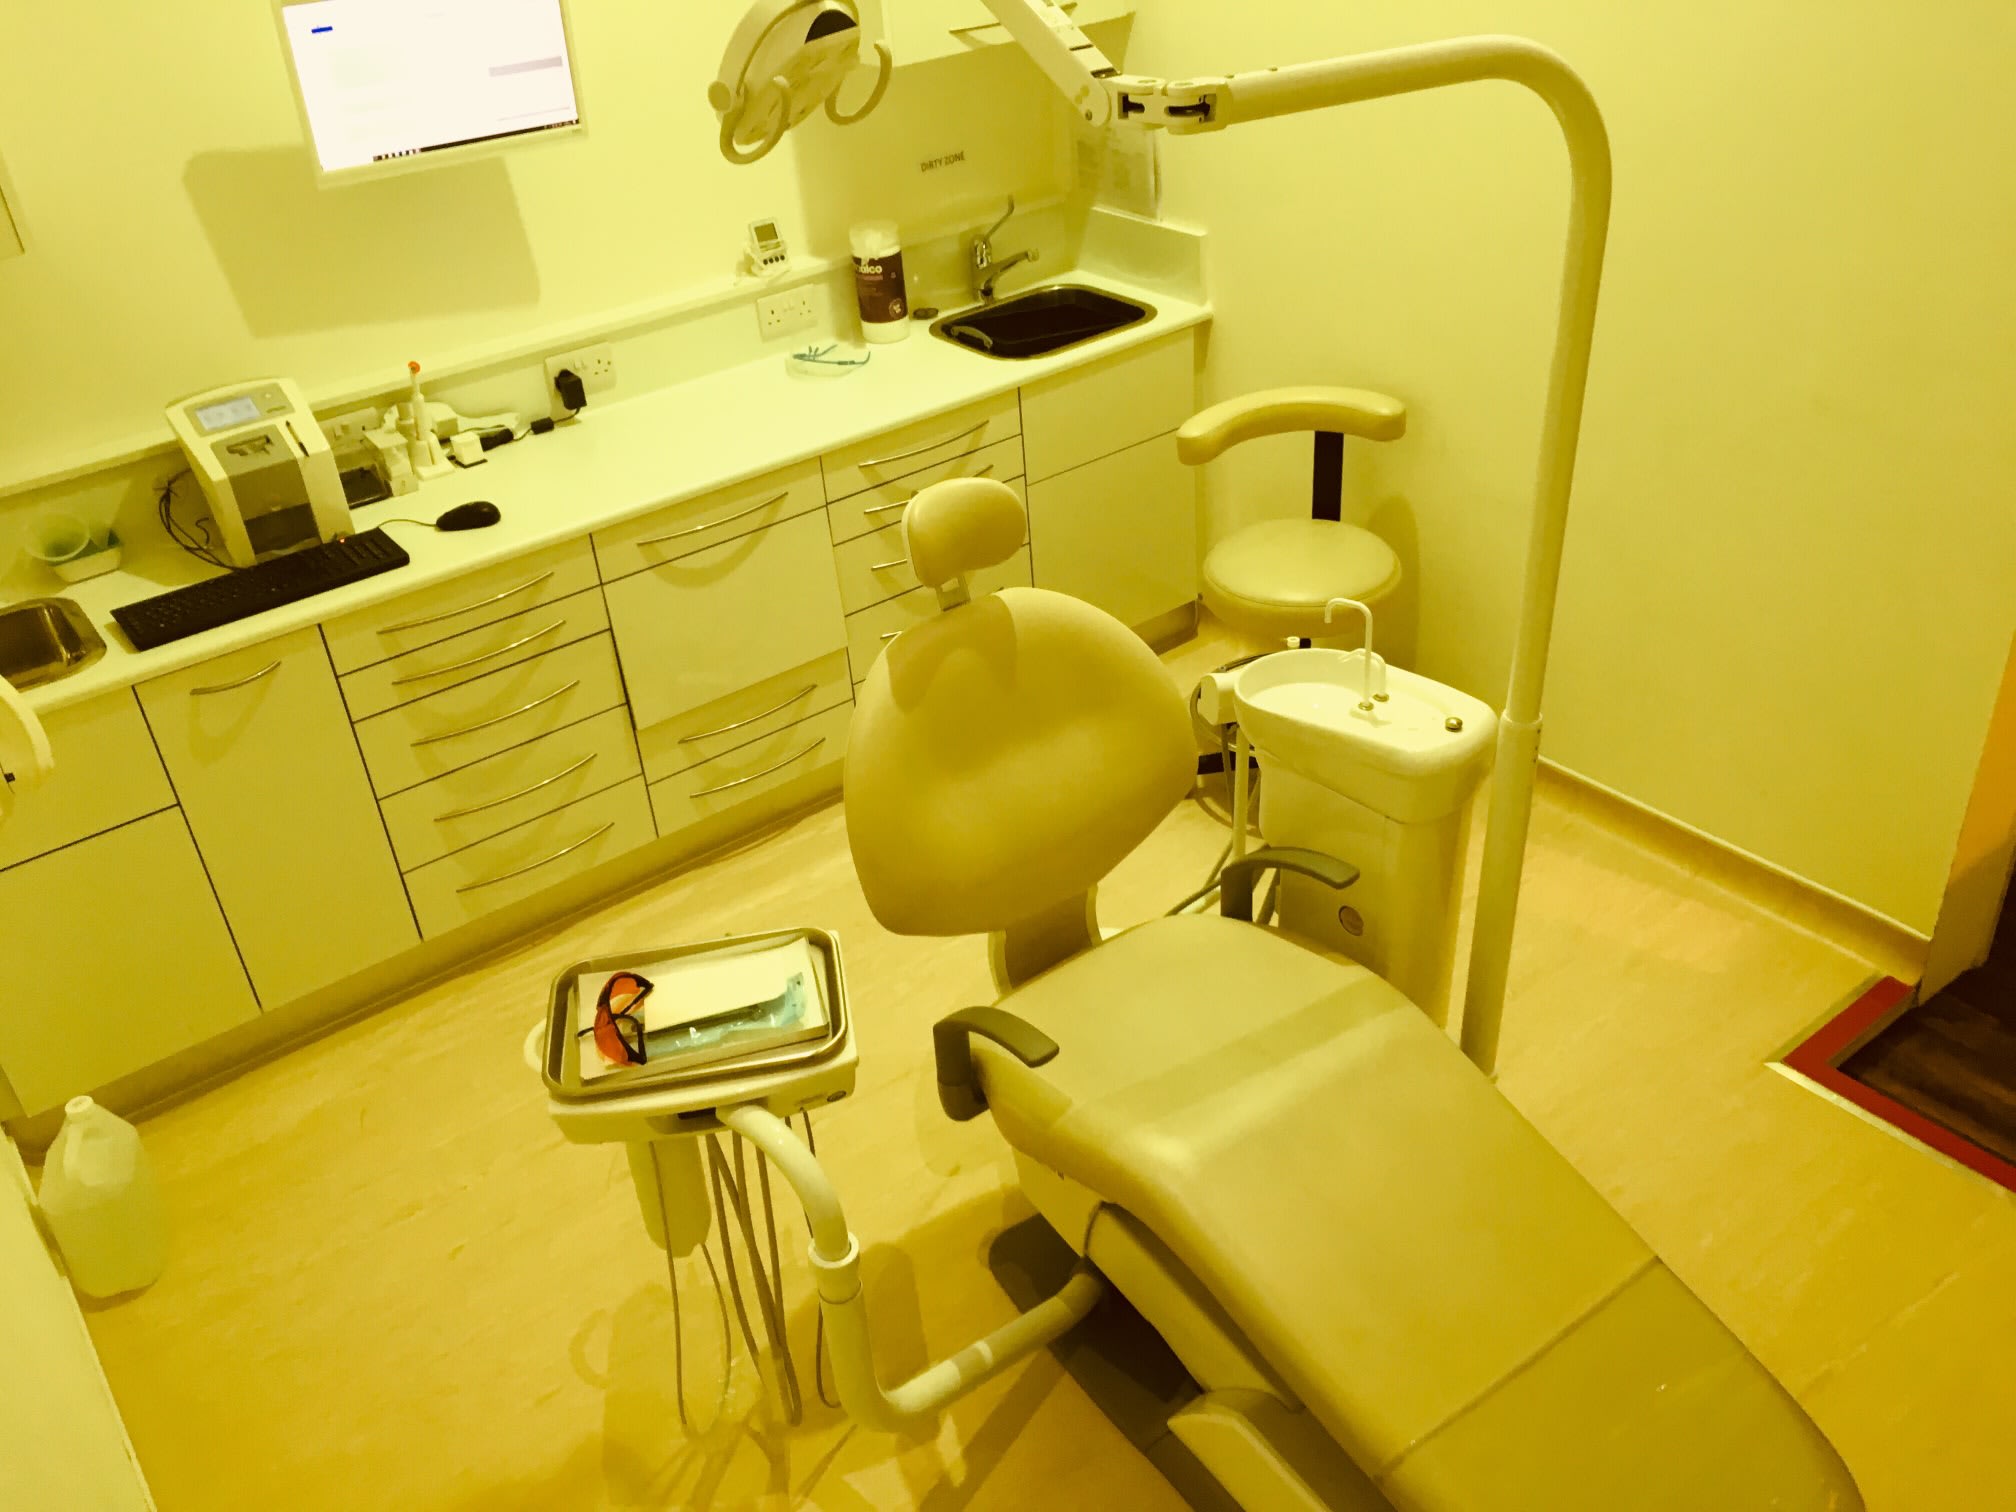 Images Smile Tech Dental & Implant Centre